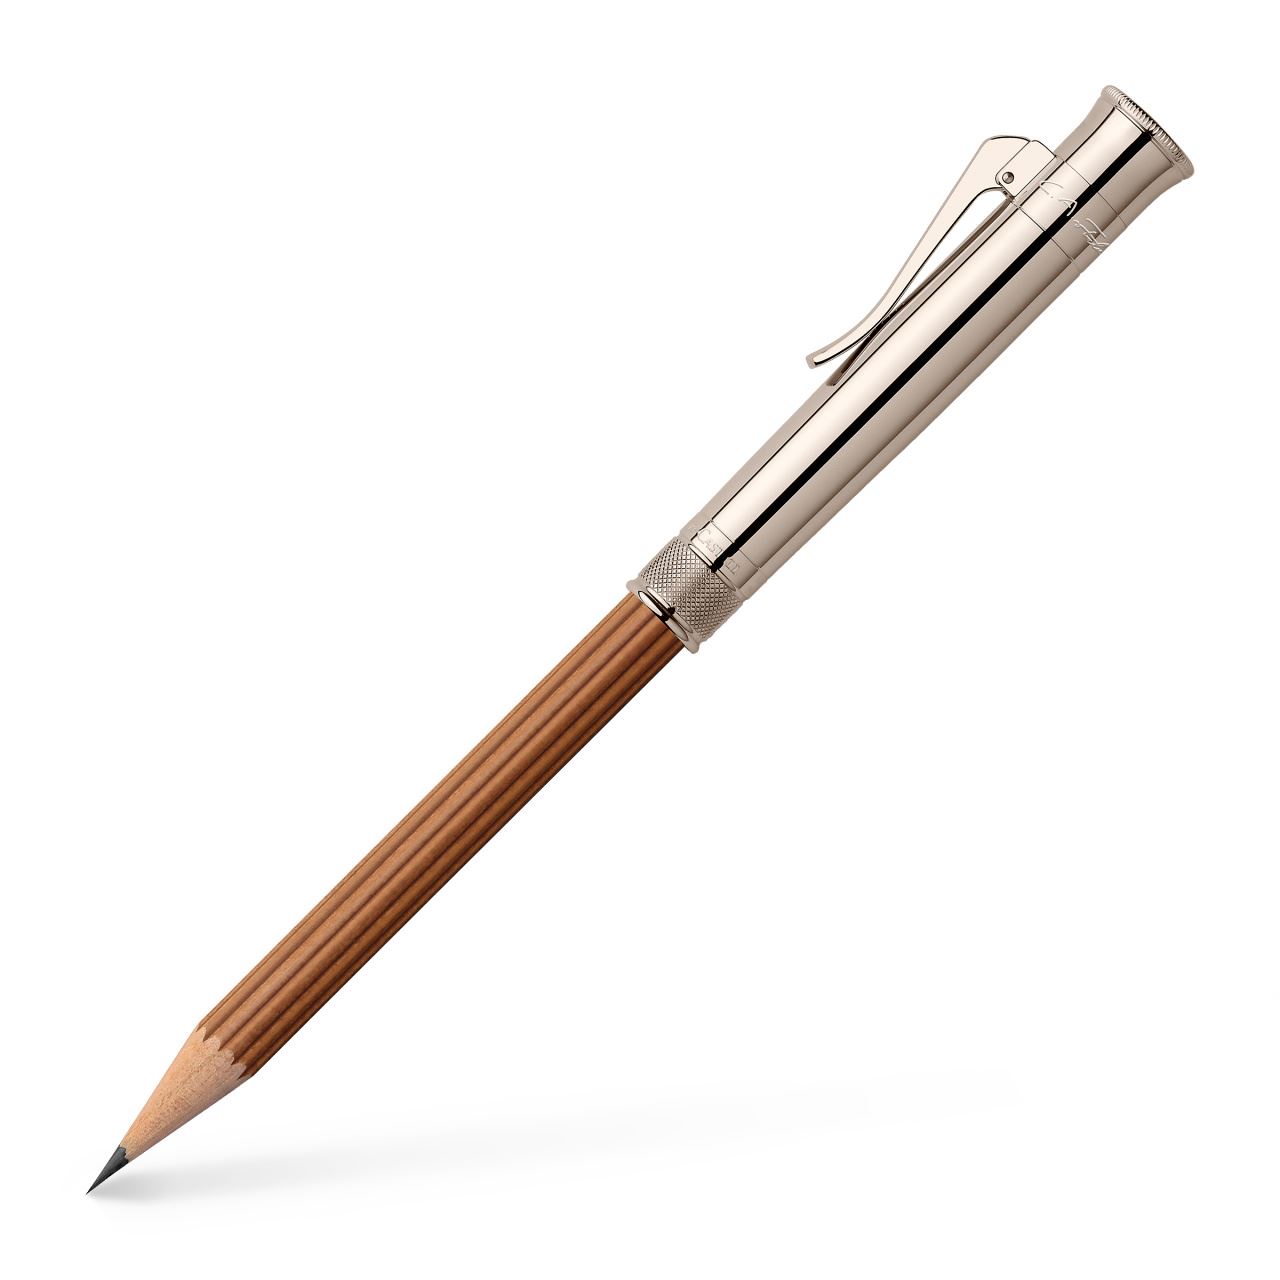 Graf-von-Faber-Castell - Perfekter Bleistift Limited Edition, Braun